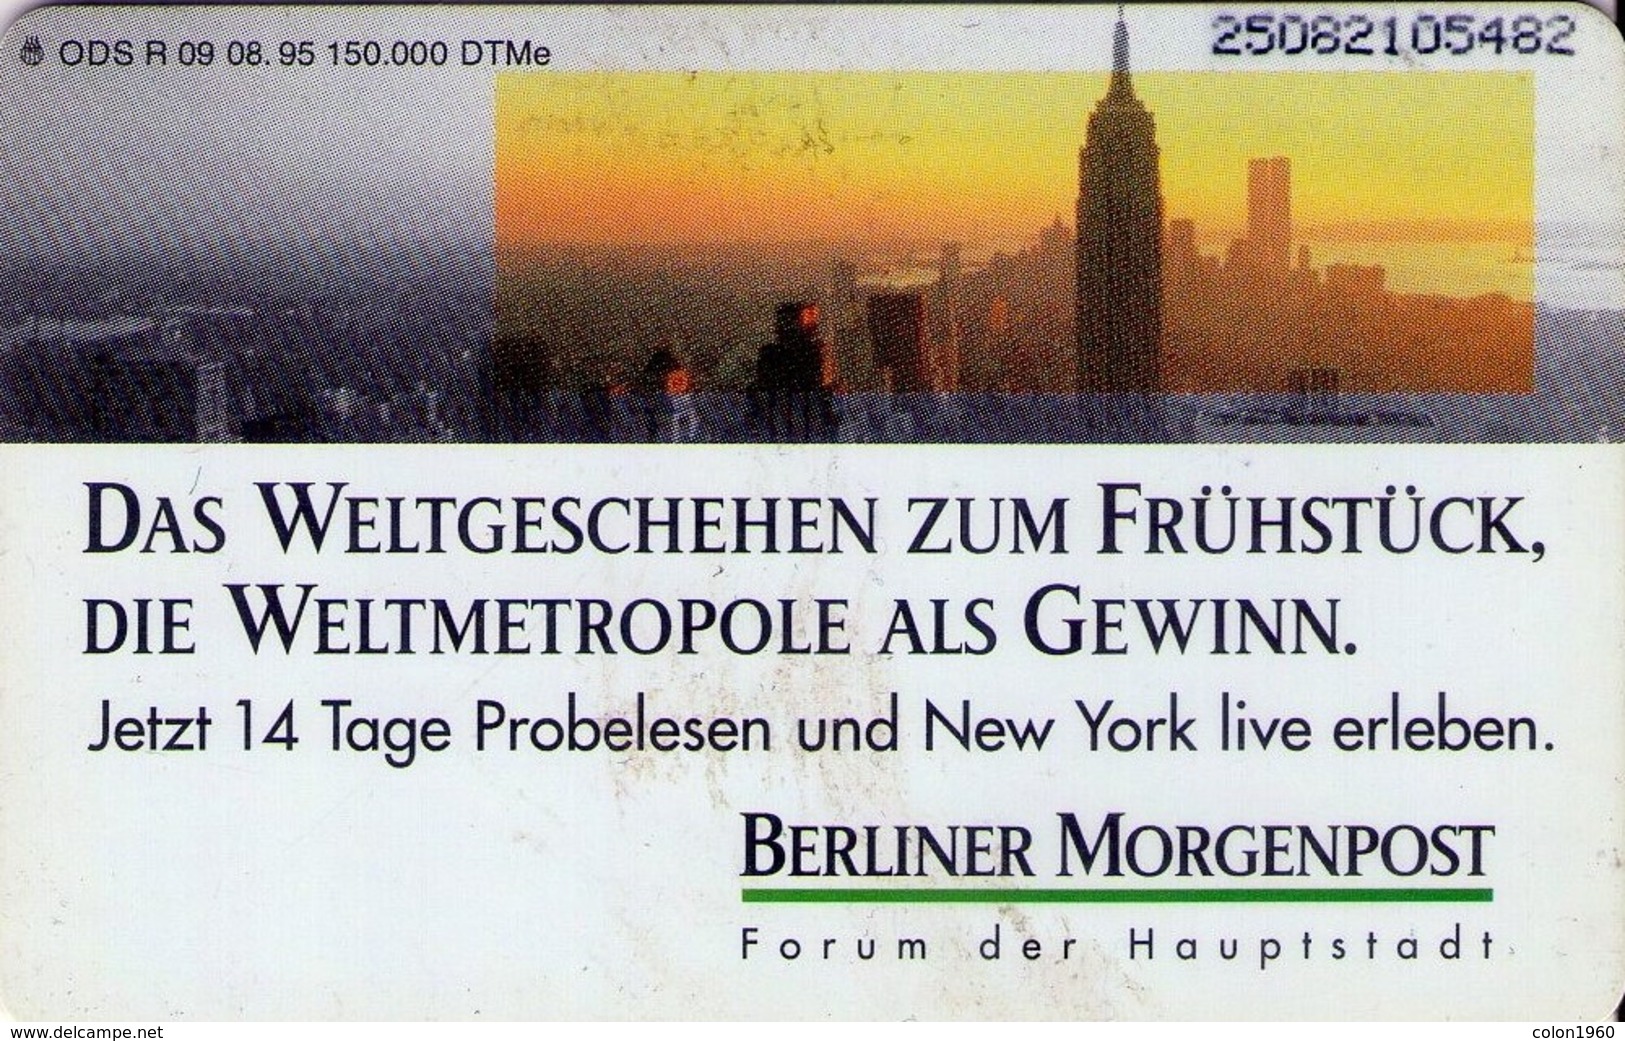 TARJETA TELEFONICA DE ALEMANIA. Berliner Morgenpost. R09 08.95 (422) - R-Series: Regionale Schalterserie